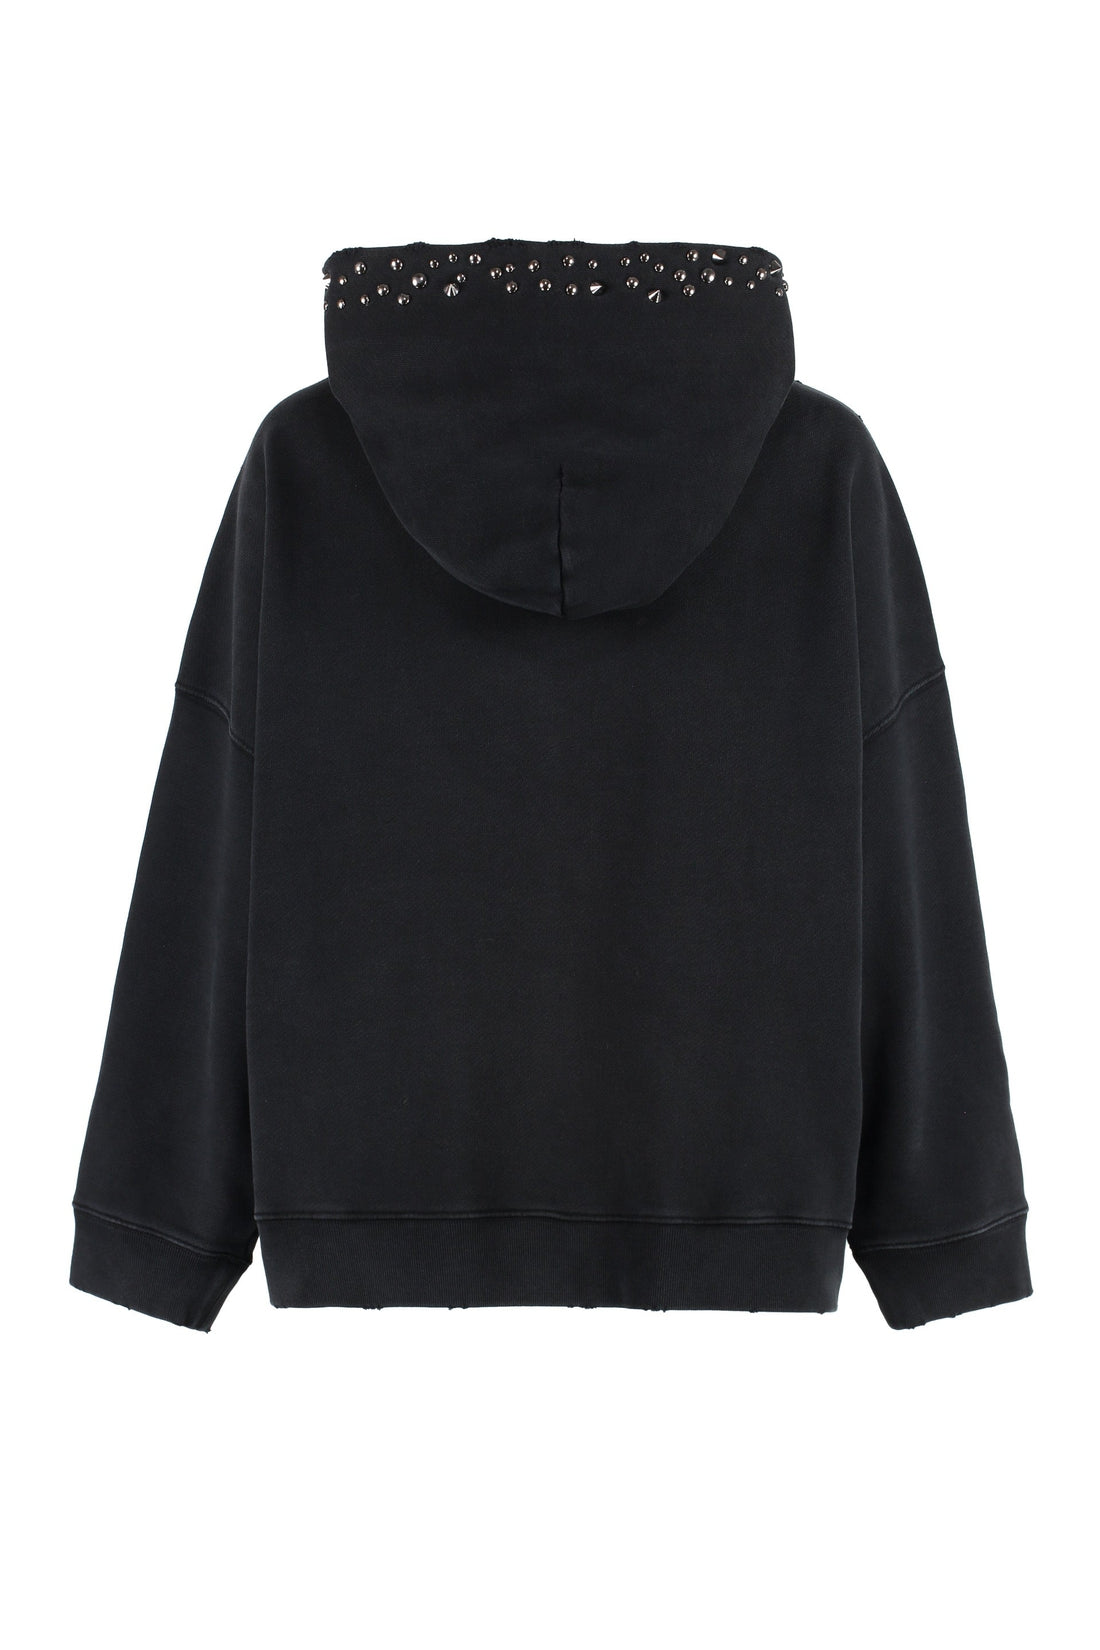 Versace-OUTLET-SALE-Logo cotton hoodie-ARCHIVIST